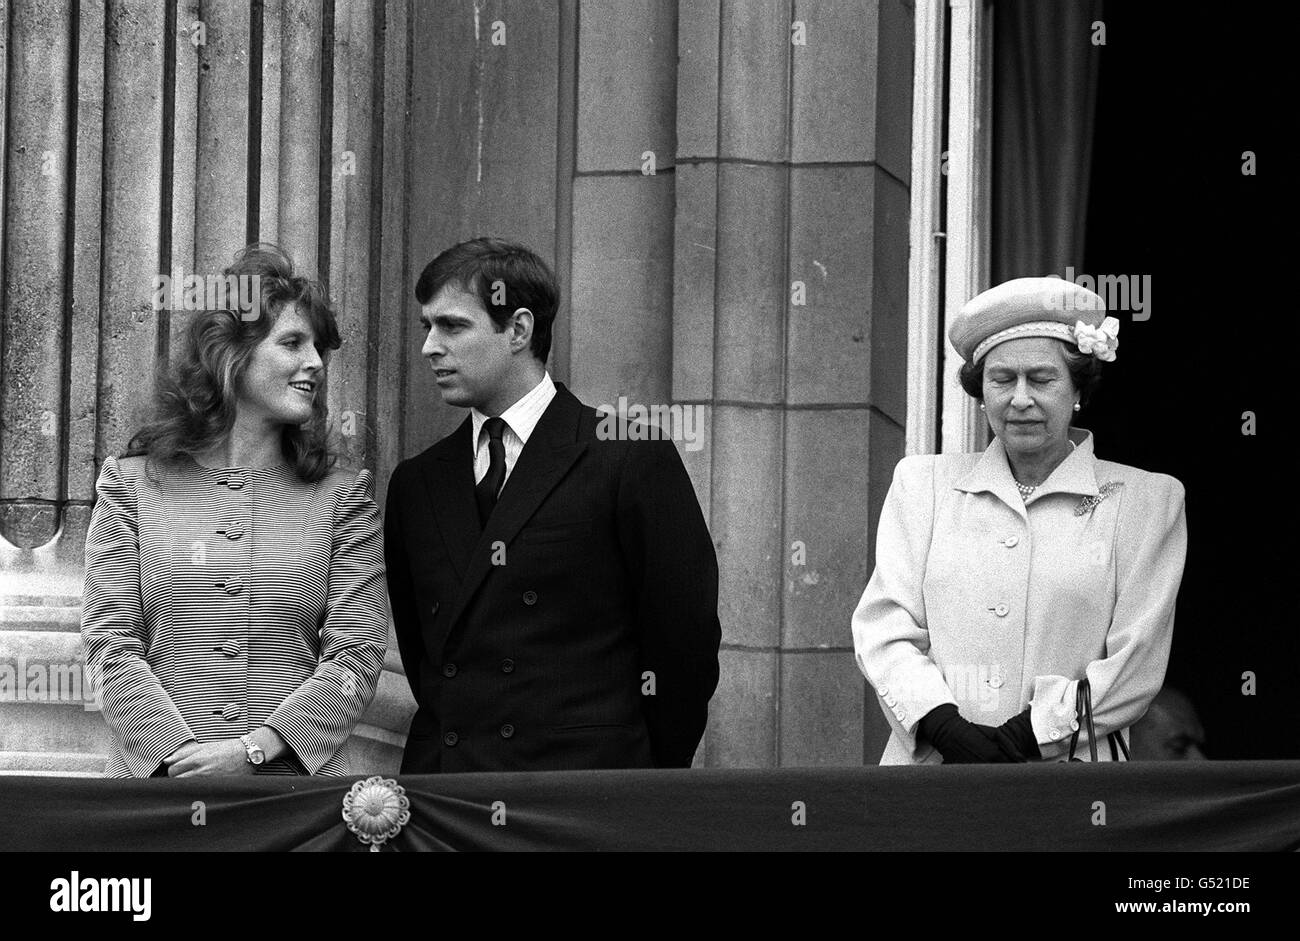 SARAH FERGUSON 1986 : le prince Andrew (plus tard le duc de York) avec sa fiancée, Sarah Ferguson (plus tard la duchesse de York) et sa mère, la reine, sur le balcon du palais de Buckingham le jour du 60e anniversaire de la reine.* le jeune couple a écouté des milliers d'enfants chanter à sa Majesté. Banque D'Images